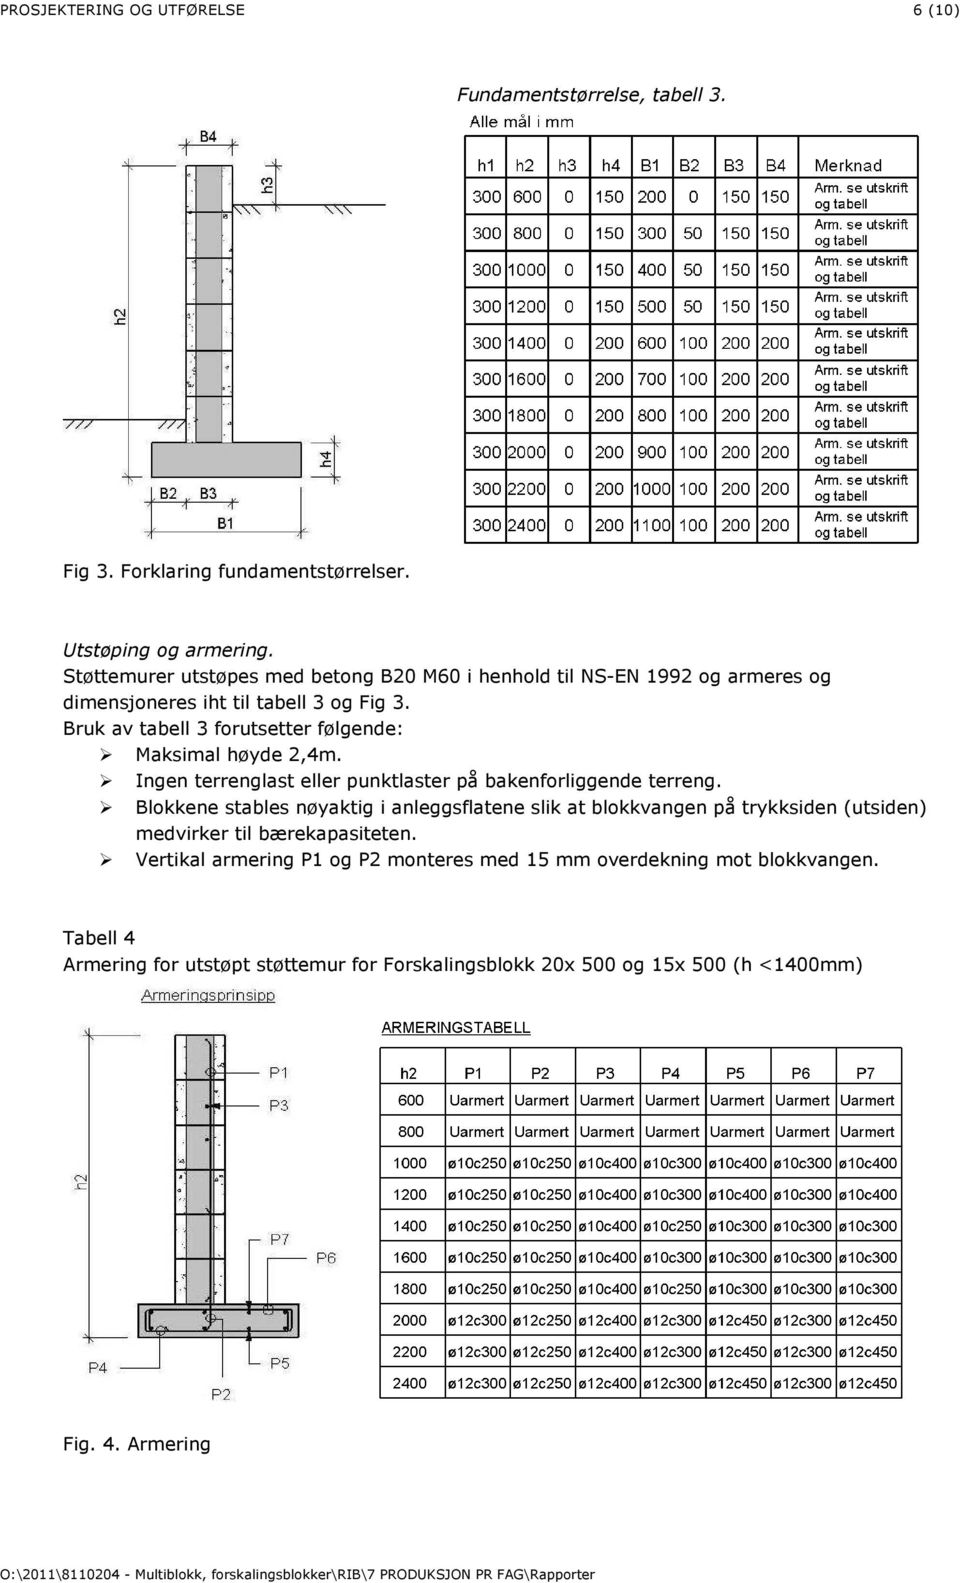 Bruk av tabell 3 forutsetter følgende: Maksimal høyde 2,4m. Ingen terrenglast eller punktlaster på bakenforliggende terreng.